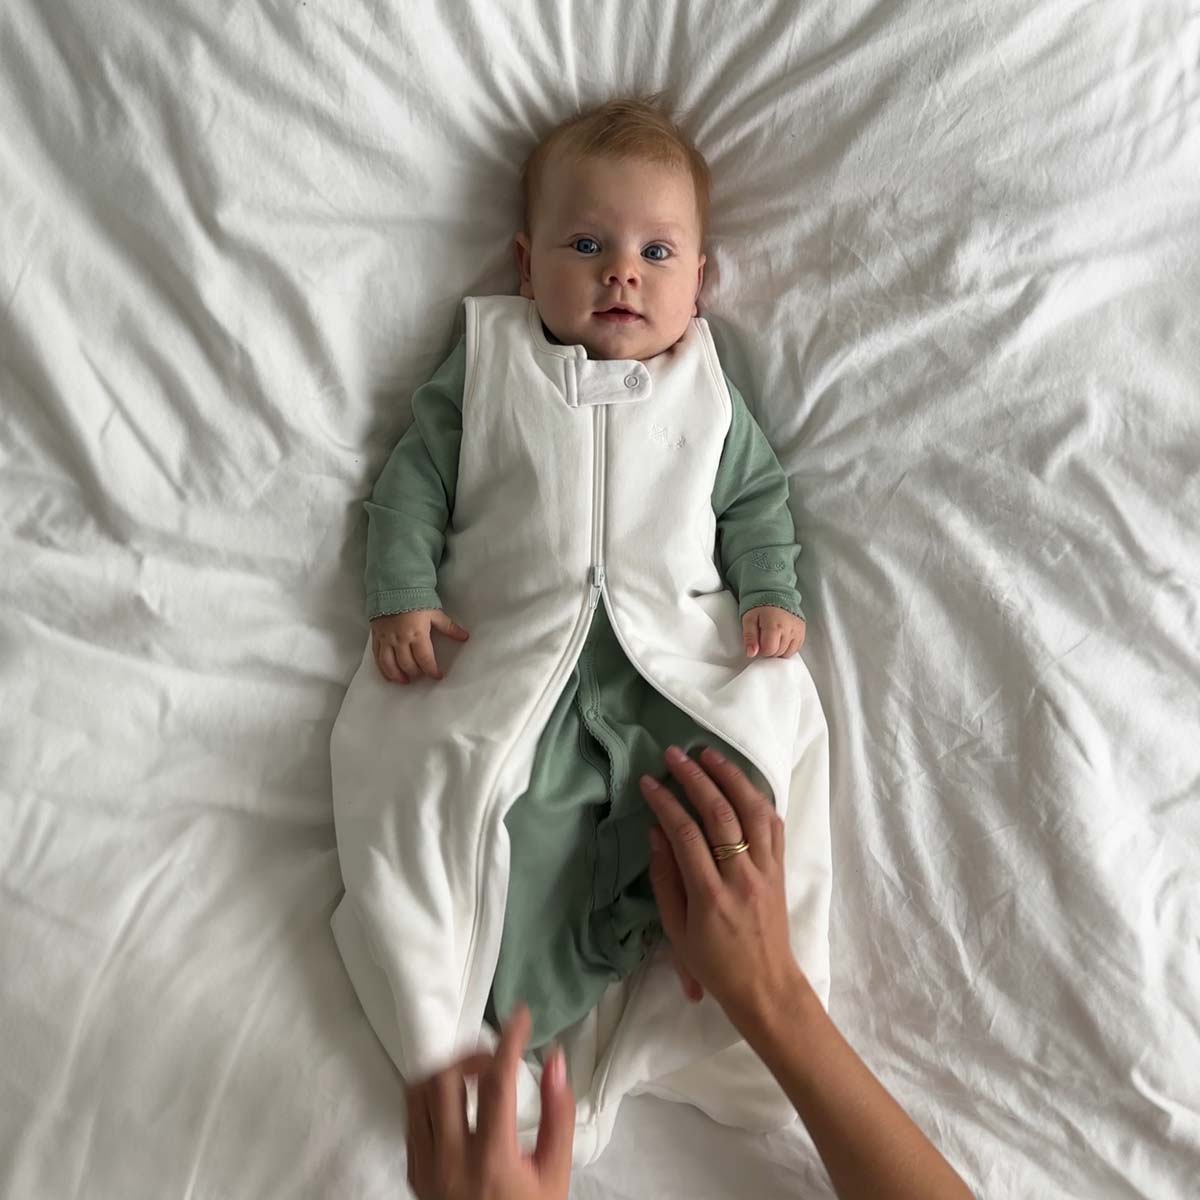 Bebis iklädd grön sovpåse (modell sleeping gown) och krämvit sovpåse (modell sleep sack) liggande på ett vitt täcke.